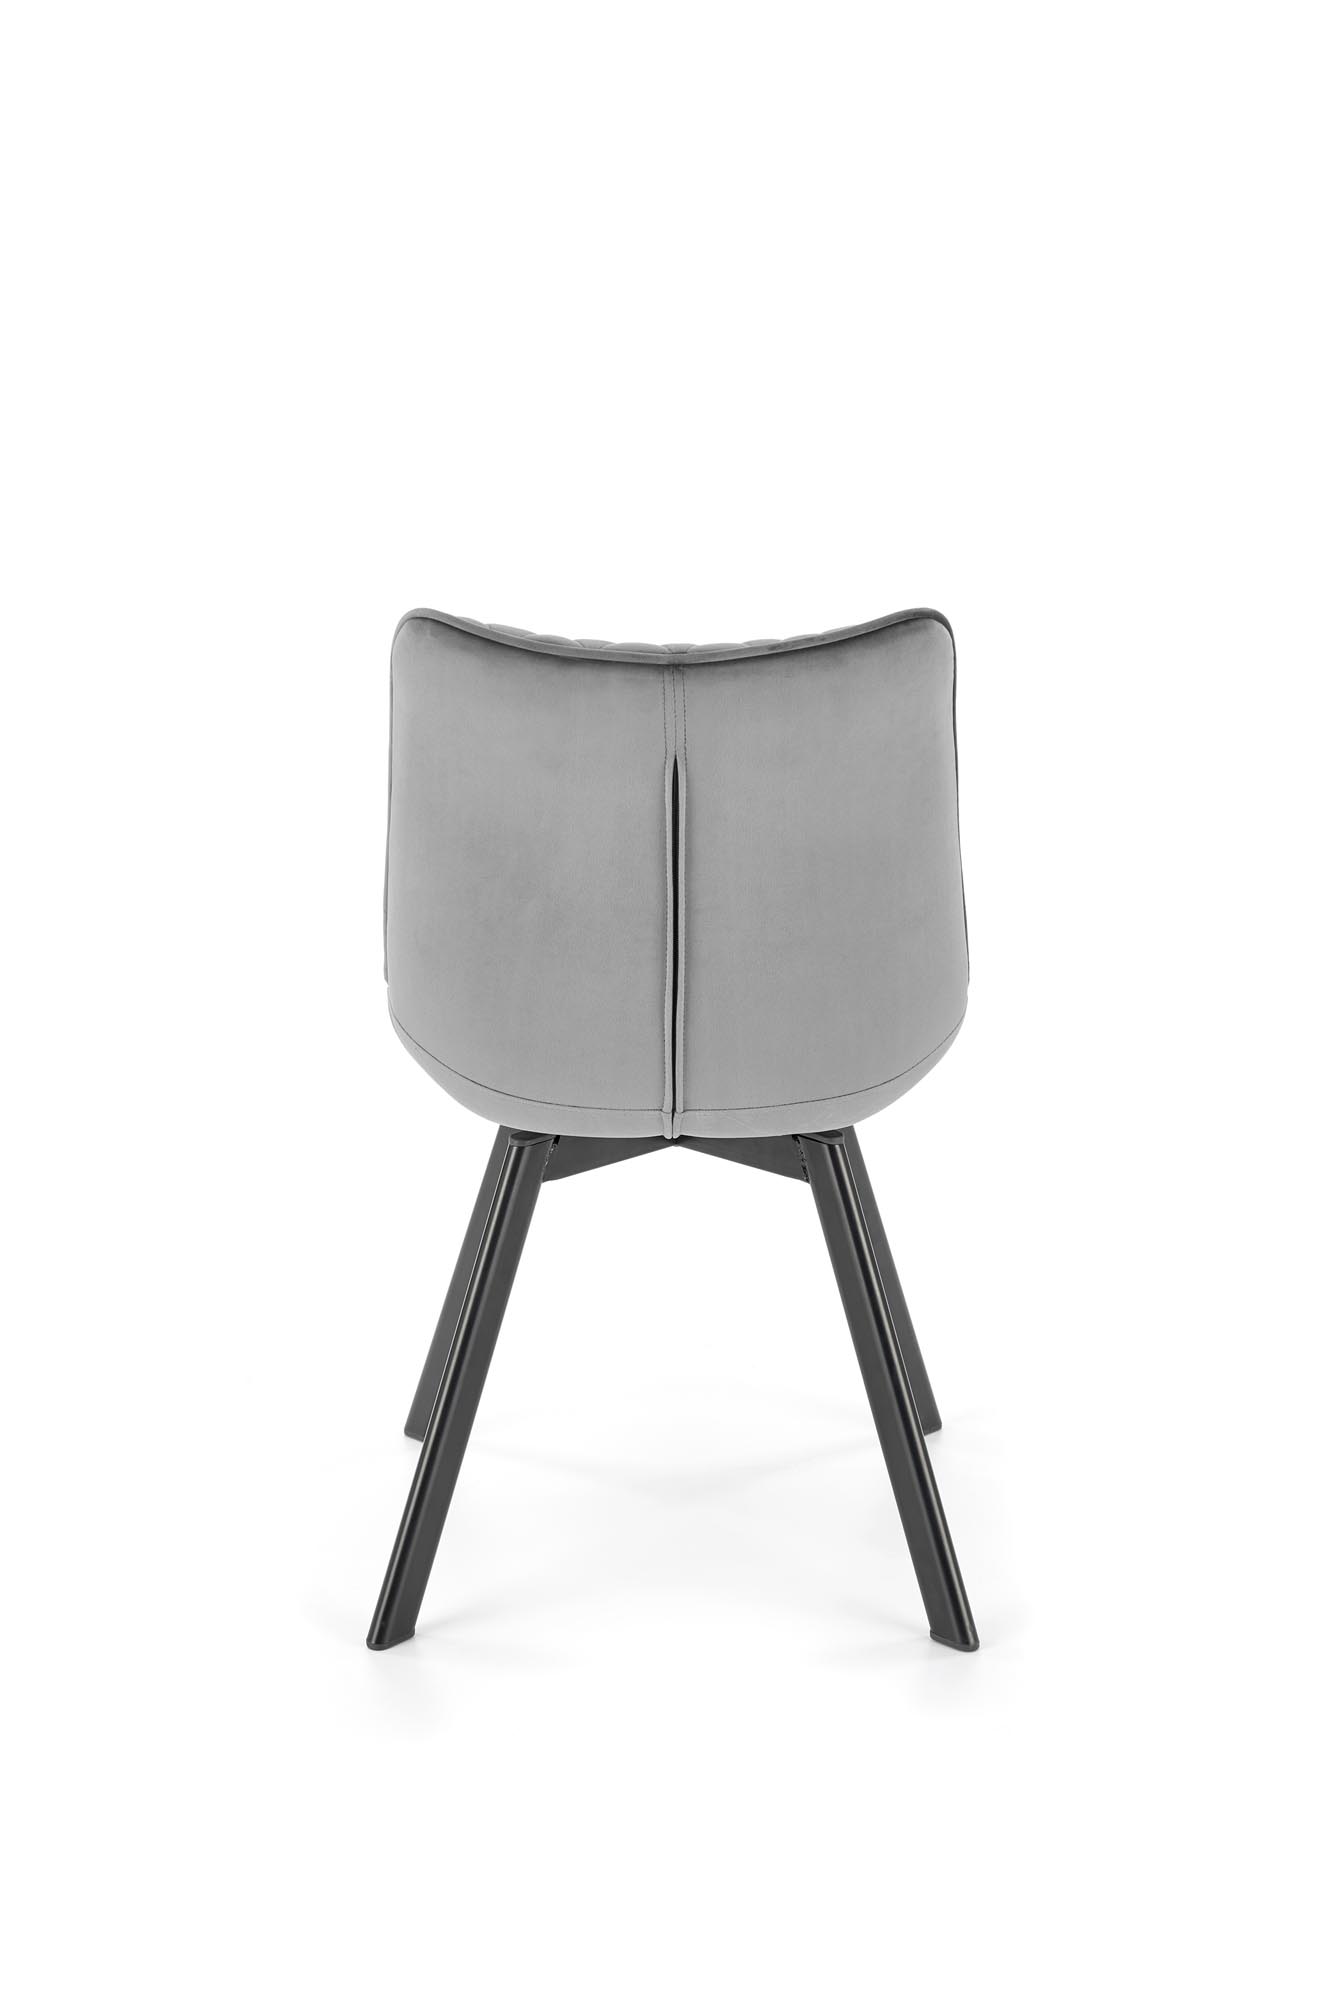 K520 Židle Nohy - čierna, Sedák - tmavý popel (1p=2szt) Židle čalouněné k520 - tmavý popel